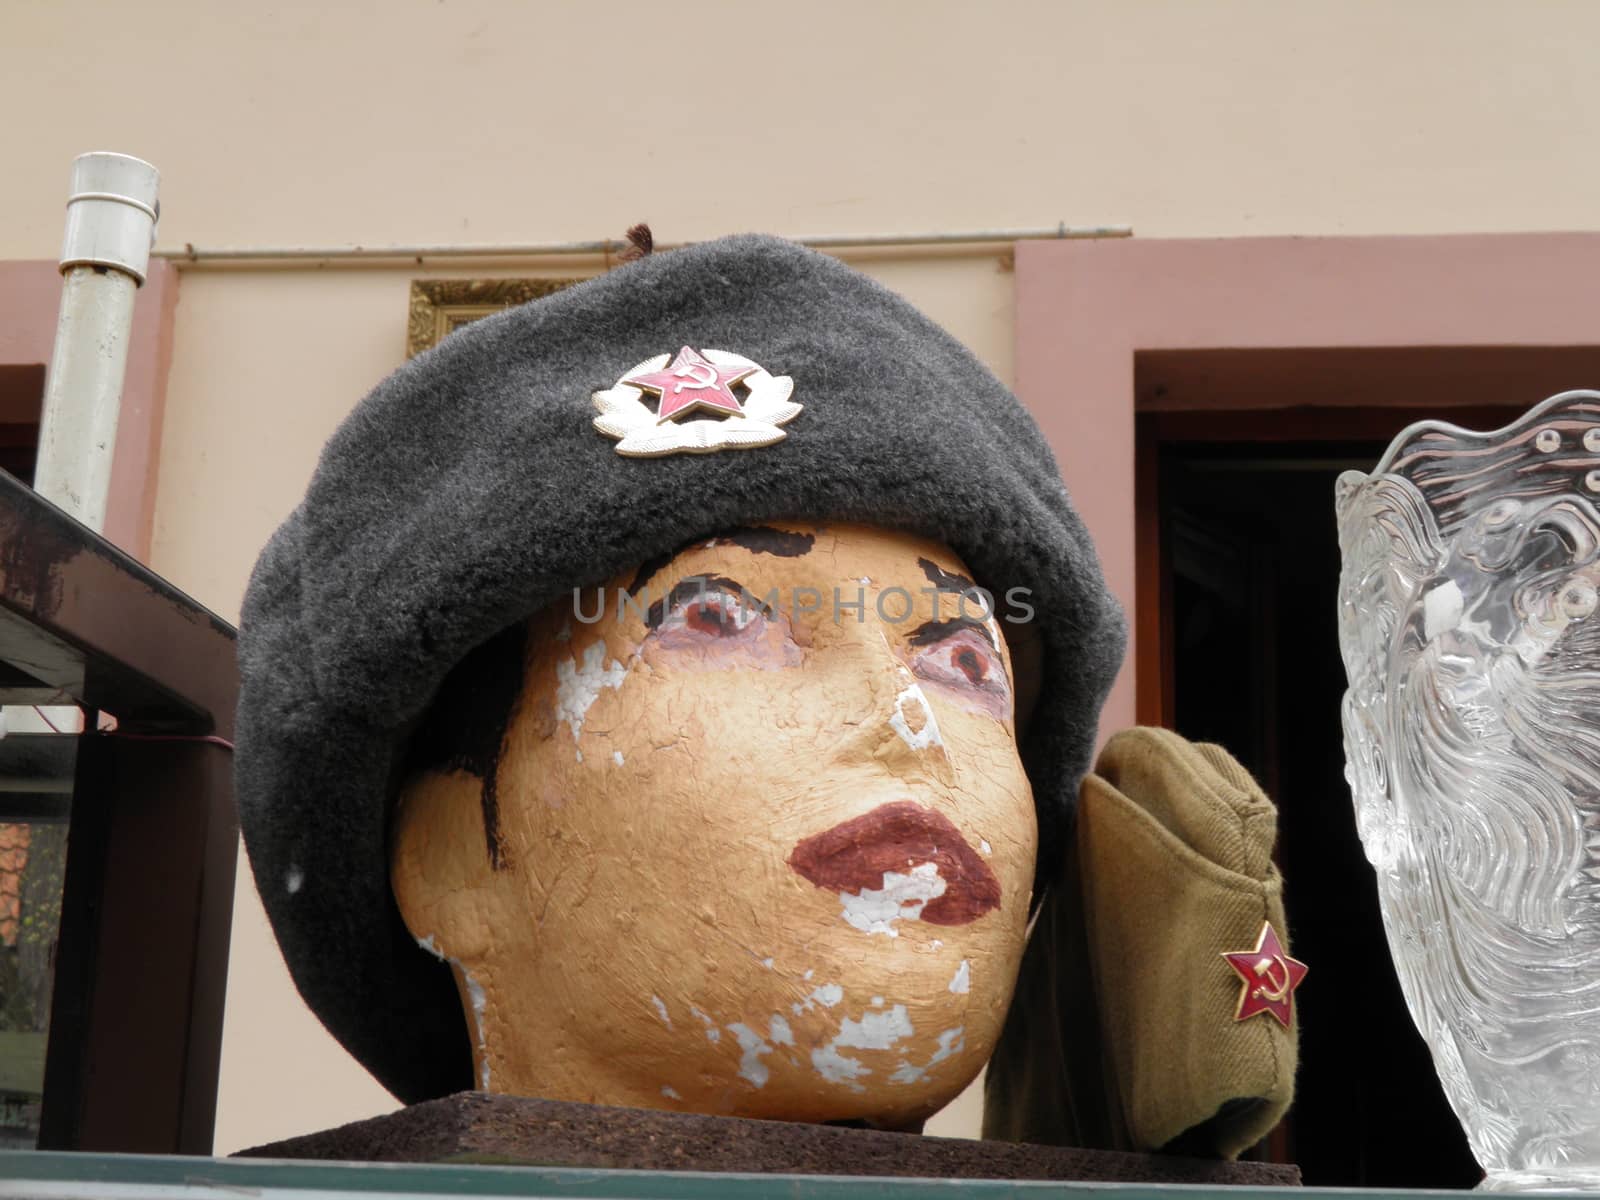 Communist memorabilia from the era of Communism for sale in Prague